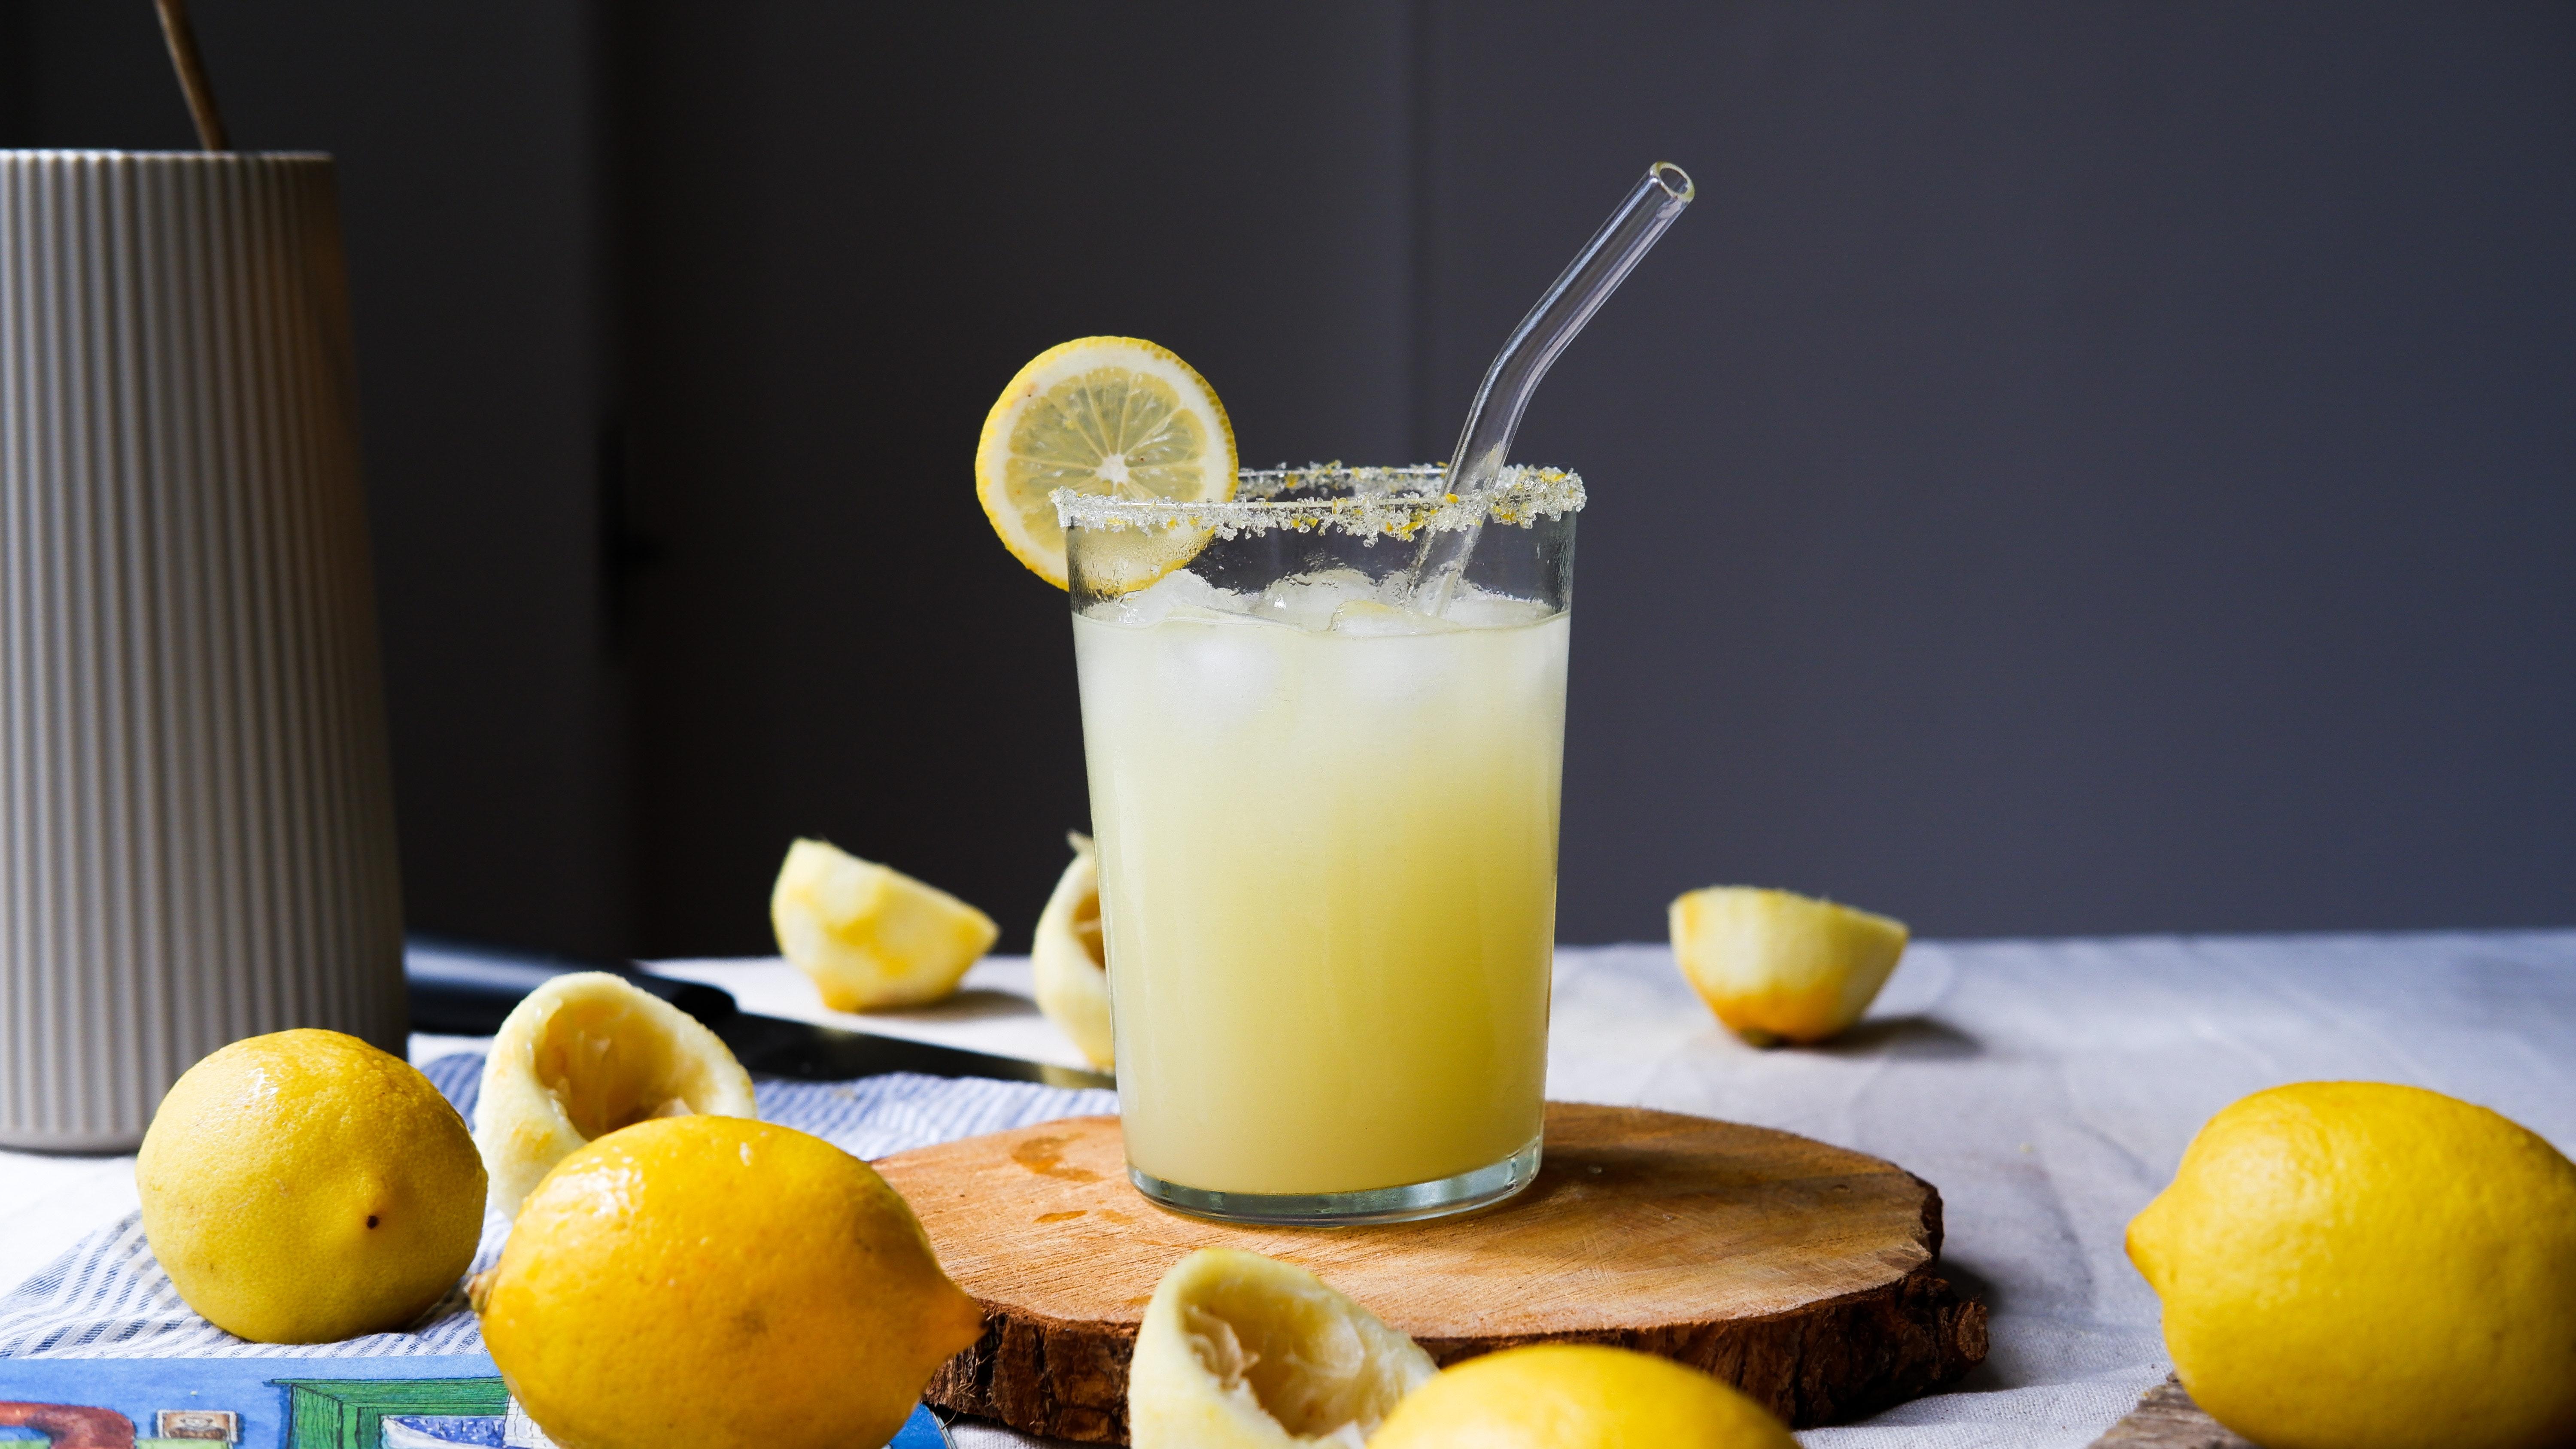 What is the main ingredient in lemon juice? 